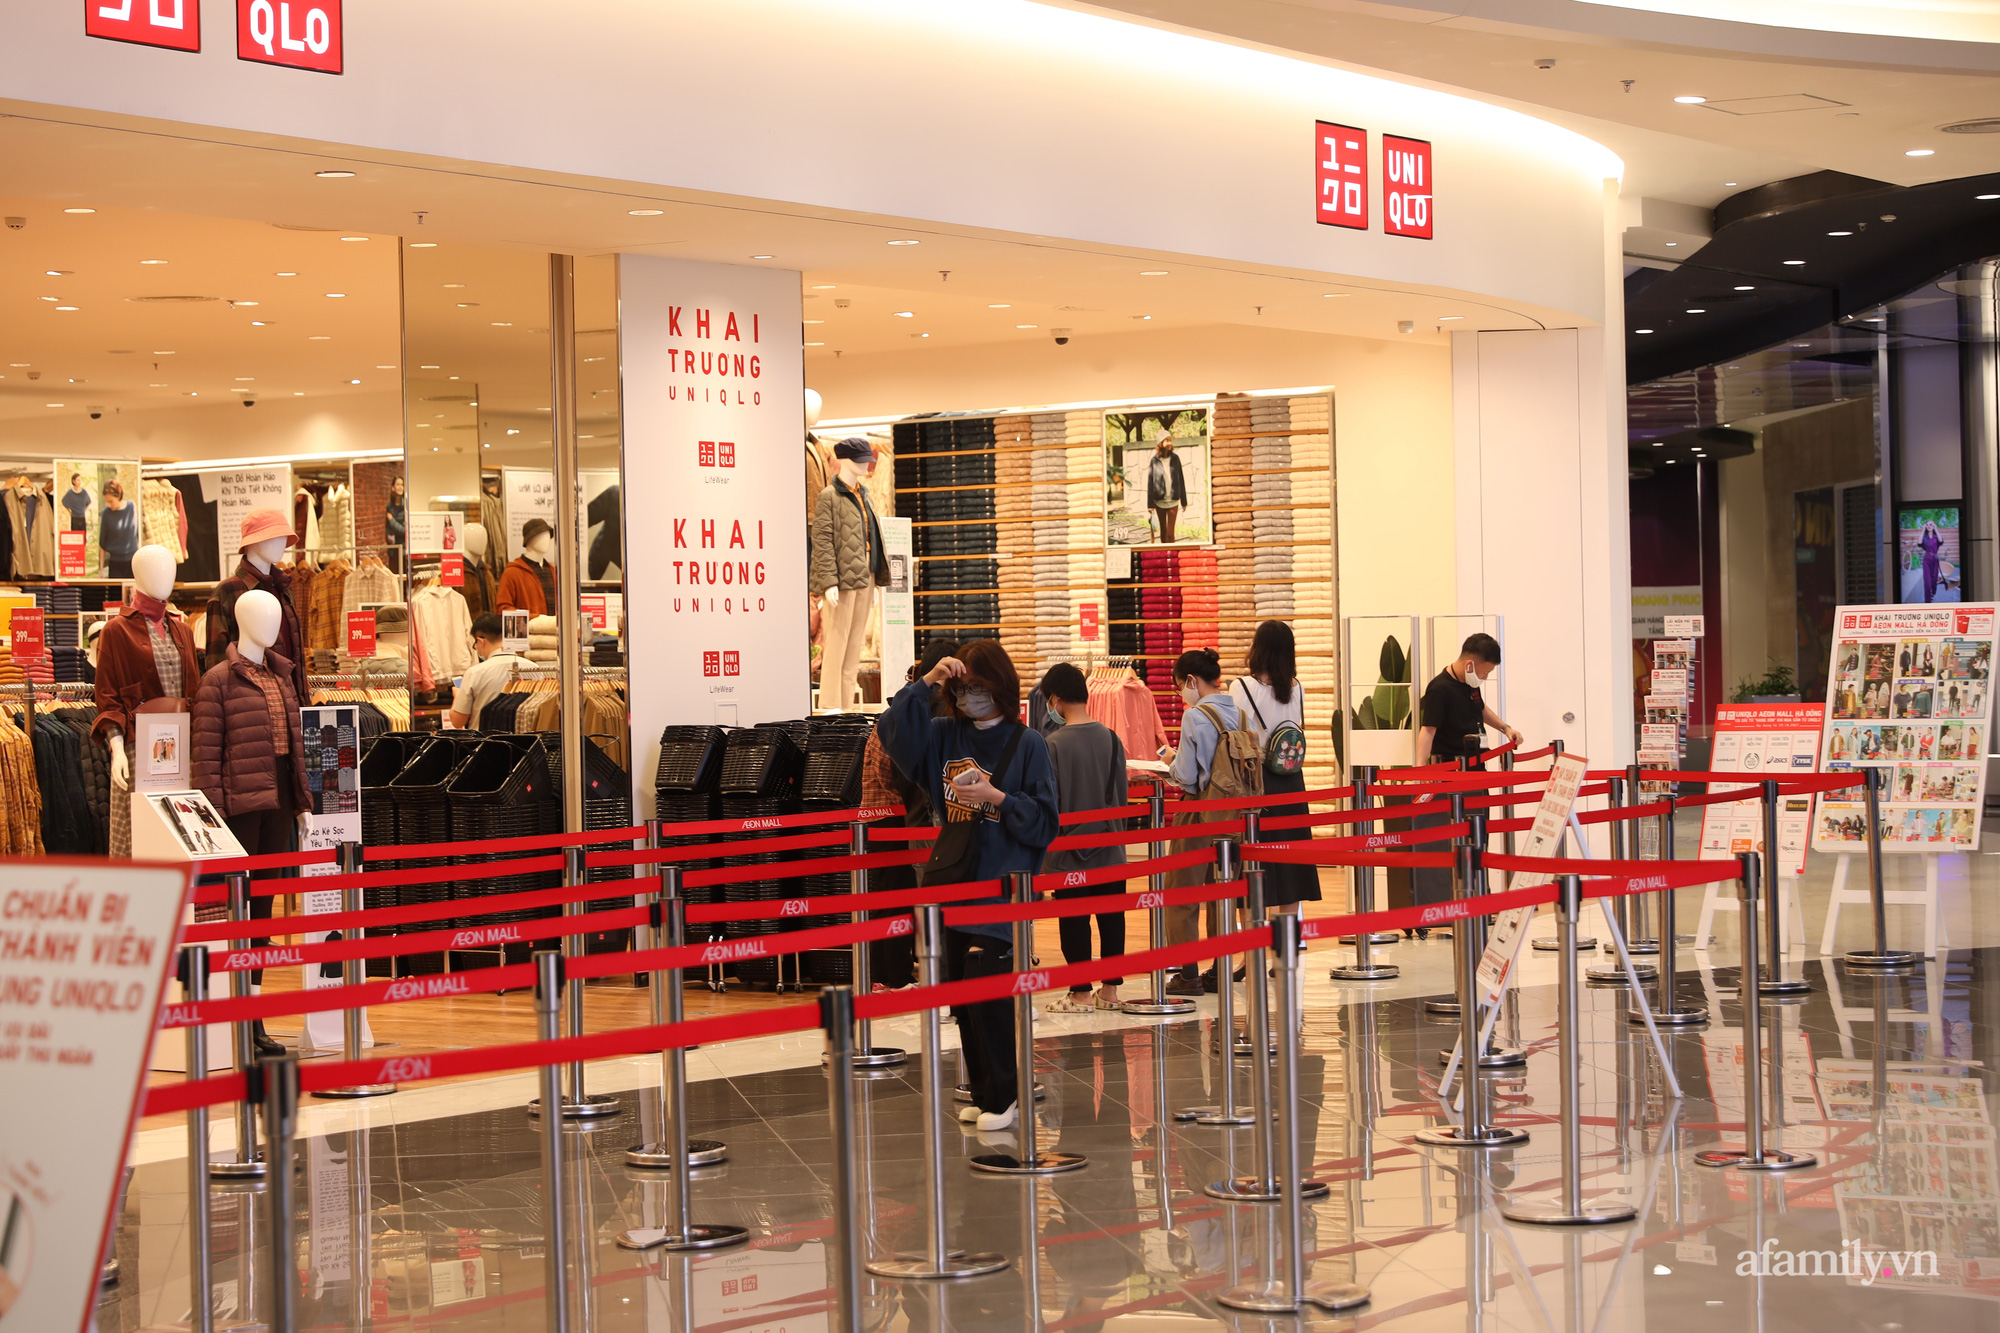 Cận cảnh cửa hàng thứ 9 của Uniqlo tại Hà Nội vừa chính thức khai trương  hội chị em mua sắm vẫn nặng tay sau thời gian nghỉ dịch